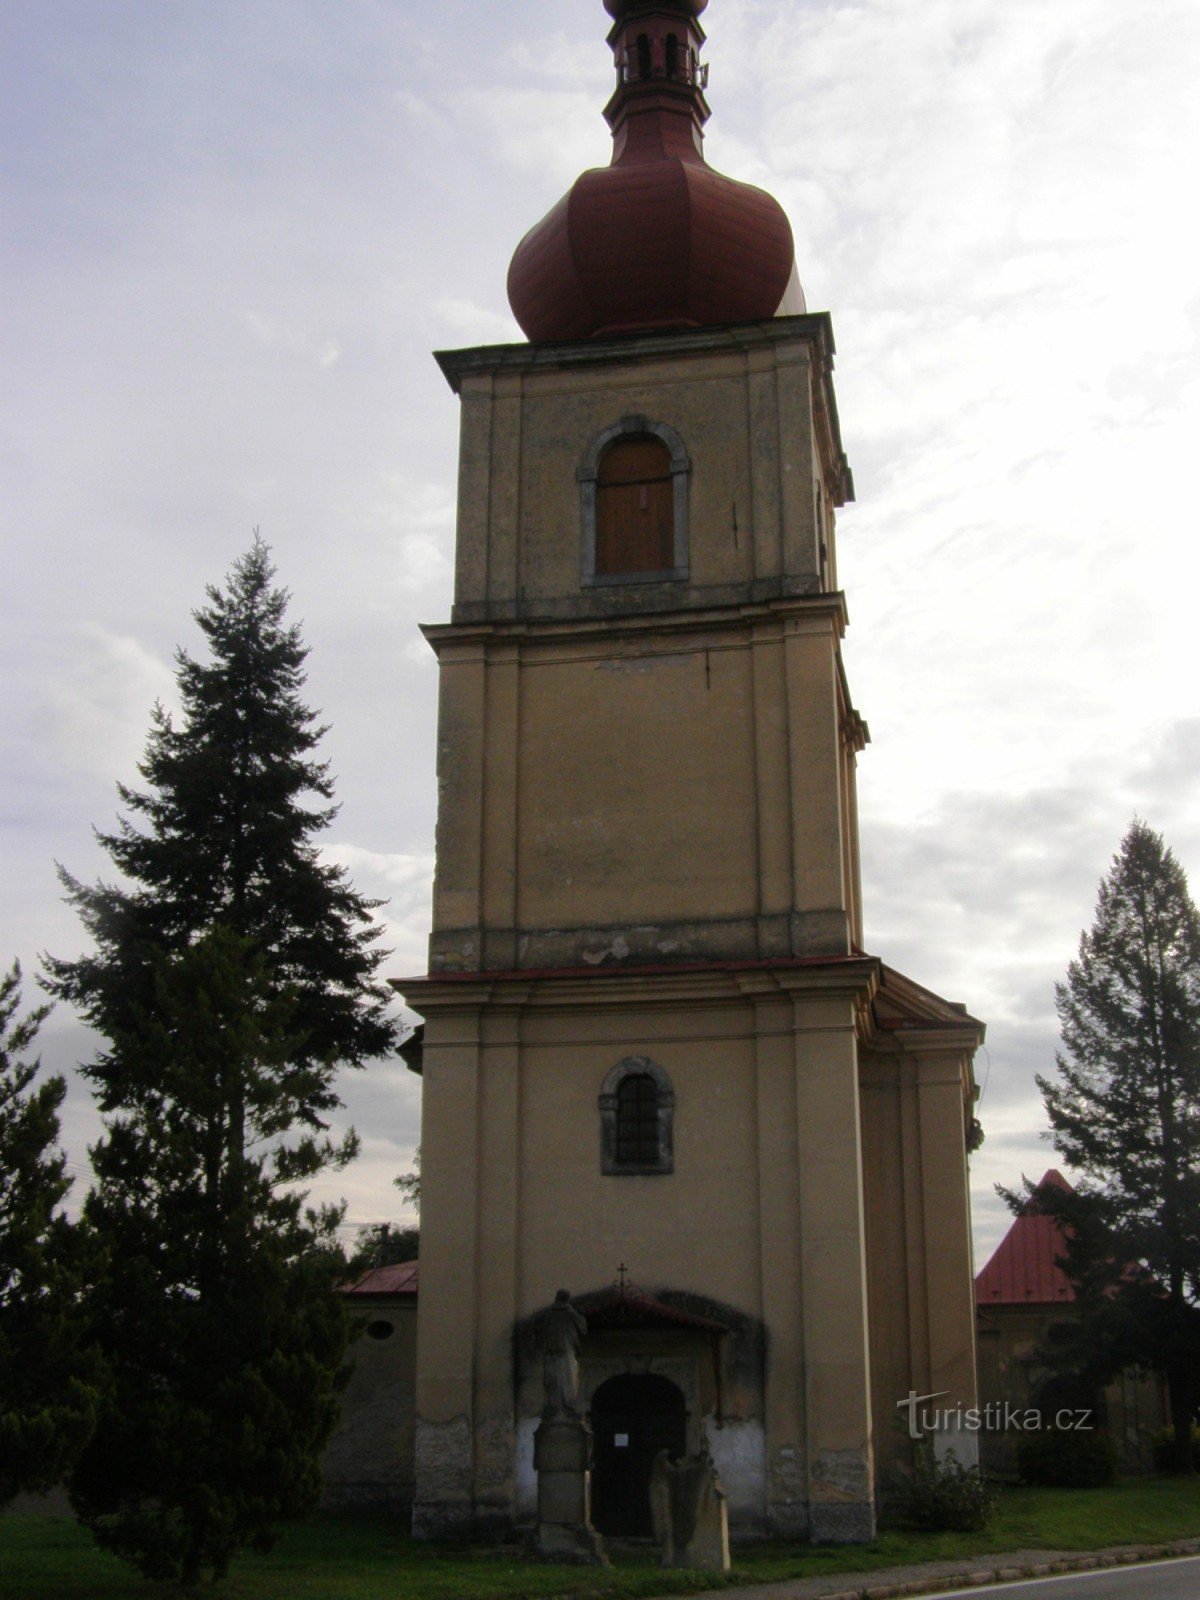 Хвалковице - церковь св. Лили